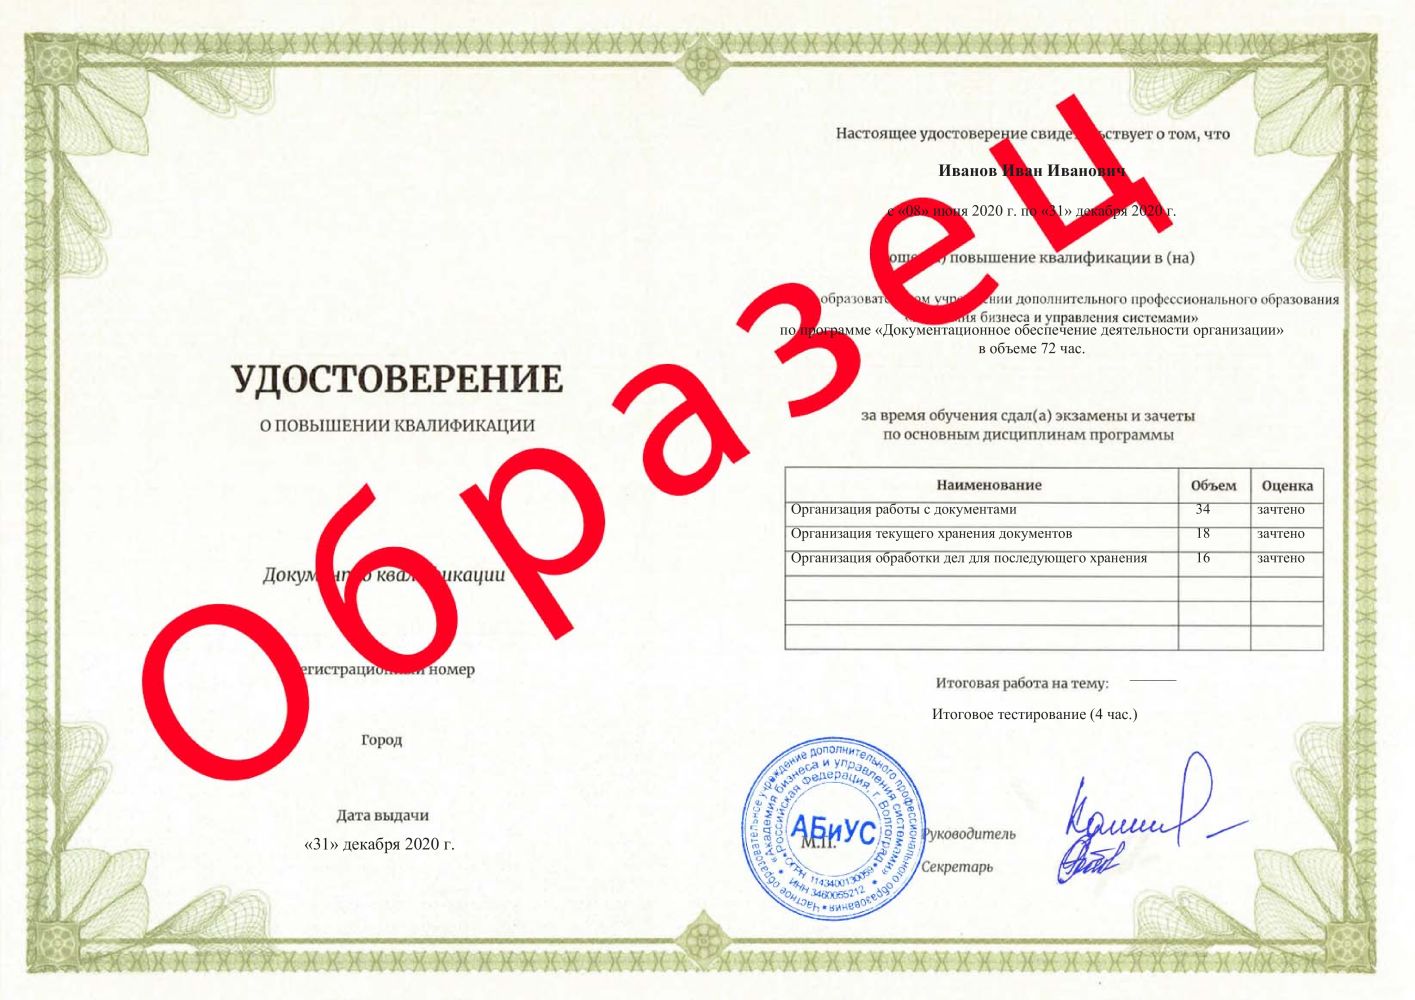 Удостоверение Документационное обеспечение деятельности организации 72 часа 3000 руб.